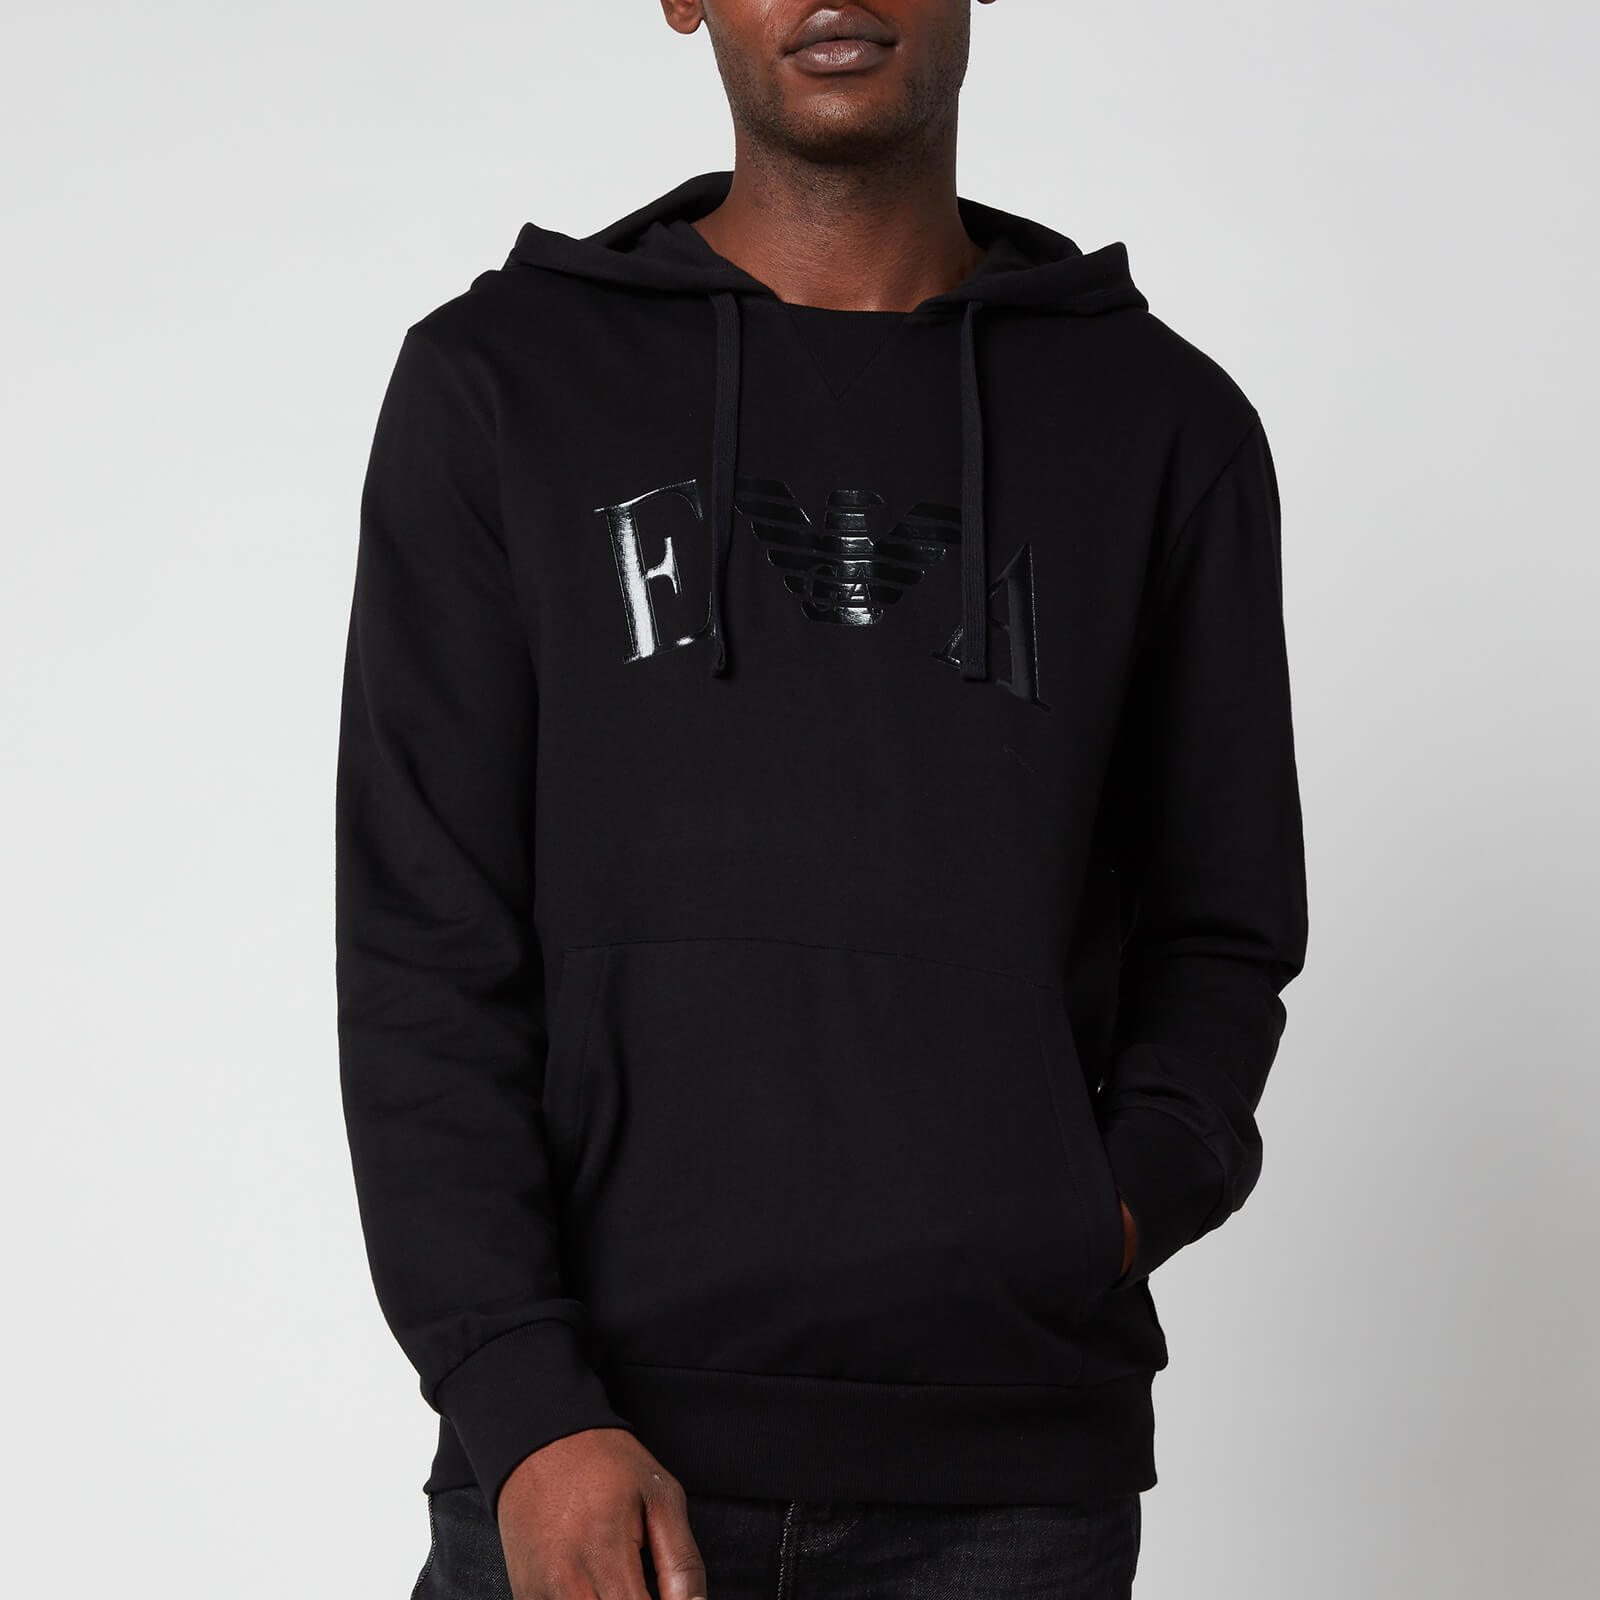 Emporio Armani Men's Iconic Terry Hooded Sweatshirt - Black - S